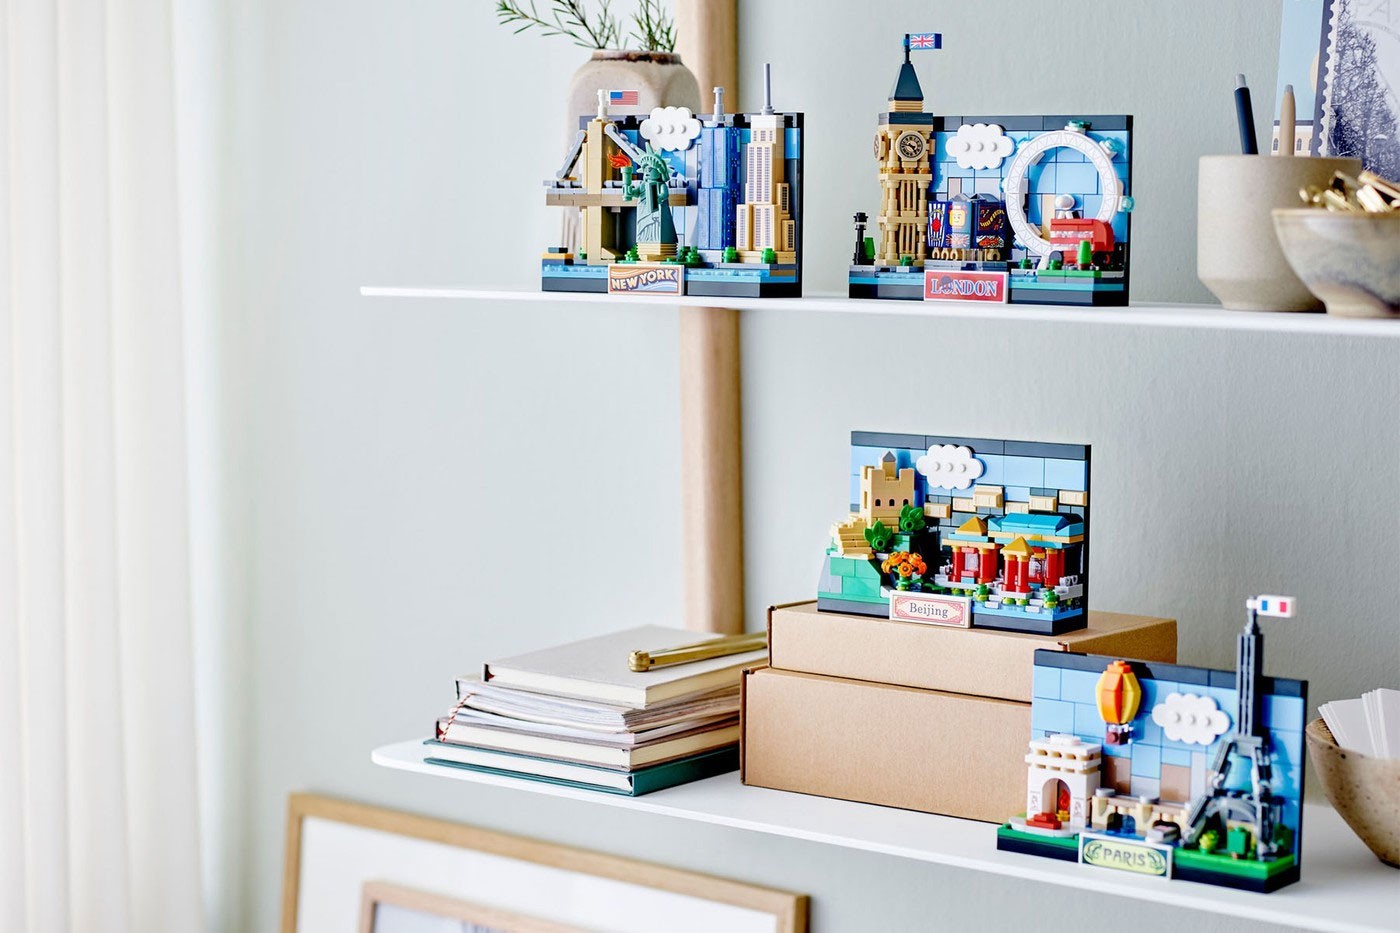 Lego выпустила набор открыток с достопримечательностями Парижа, Лондона и Нью-Йорка (фото 2)